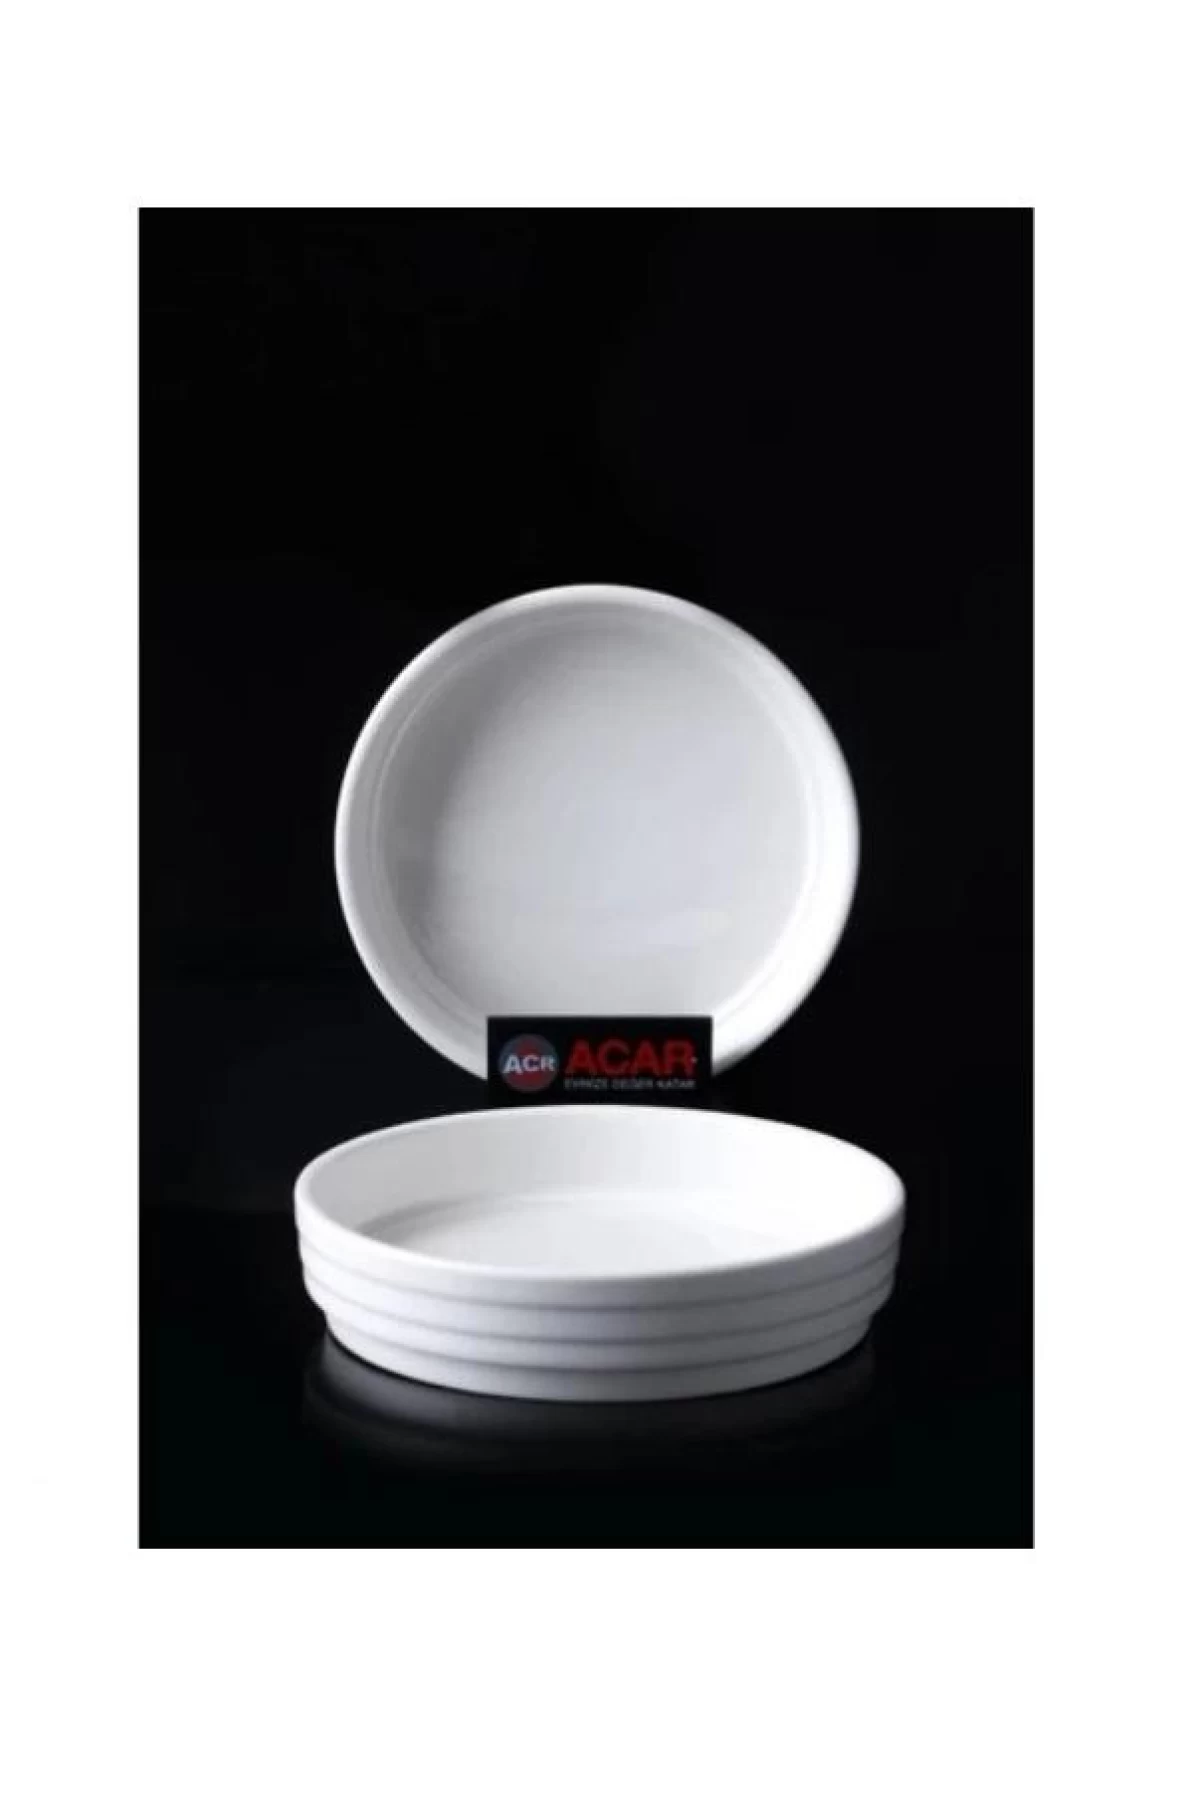 Acar YSF11808 Porselen Oval Tabak 12.7 Cm 6 Lı